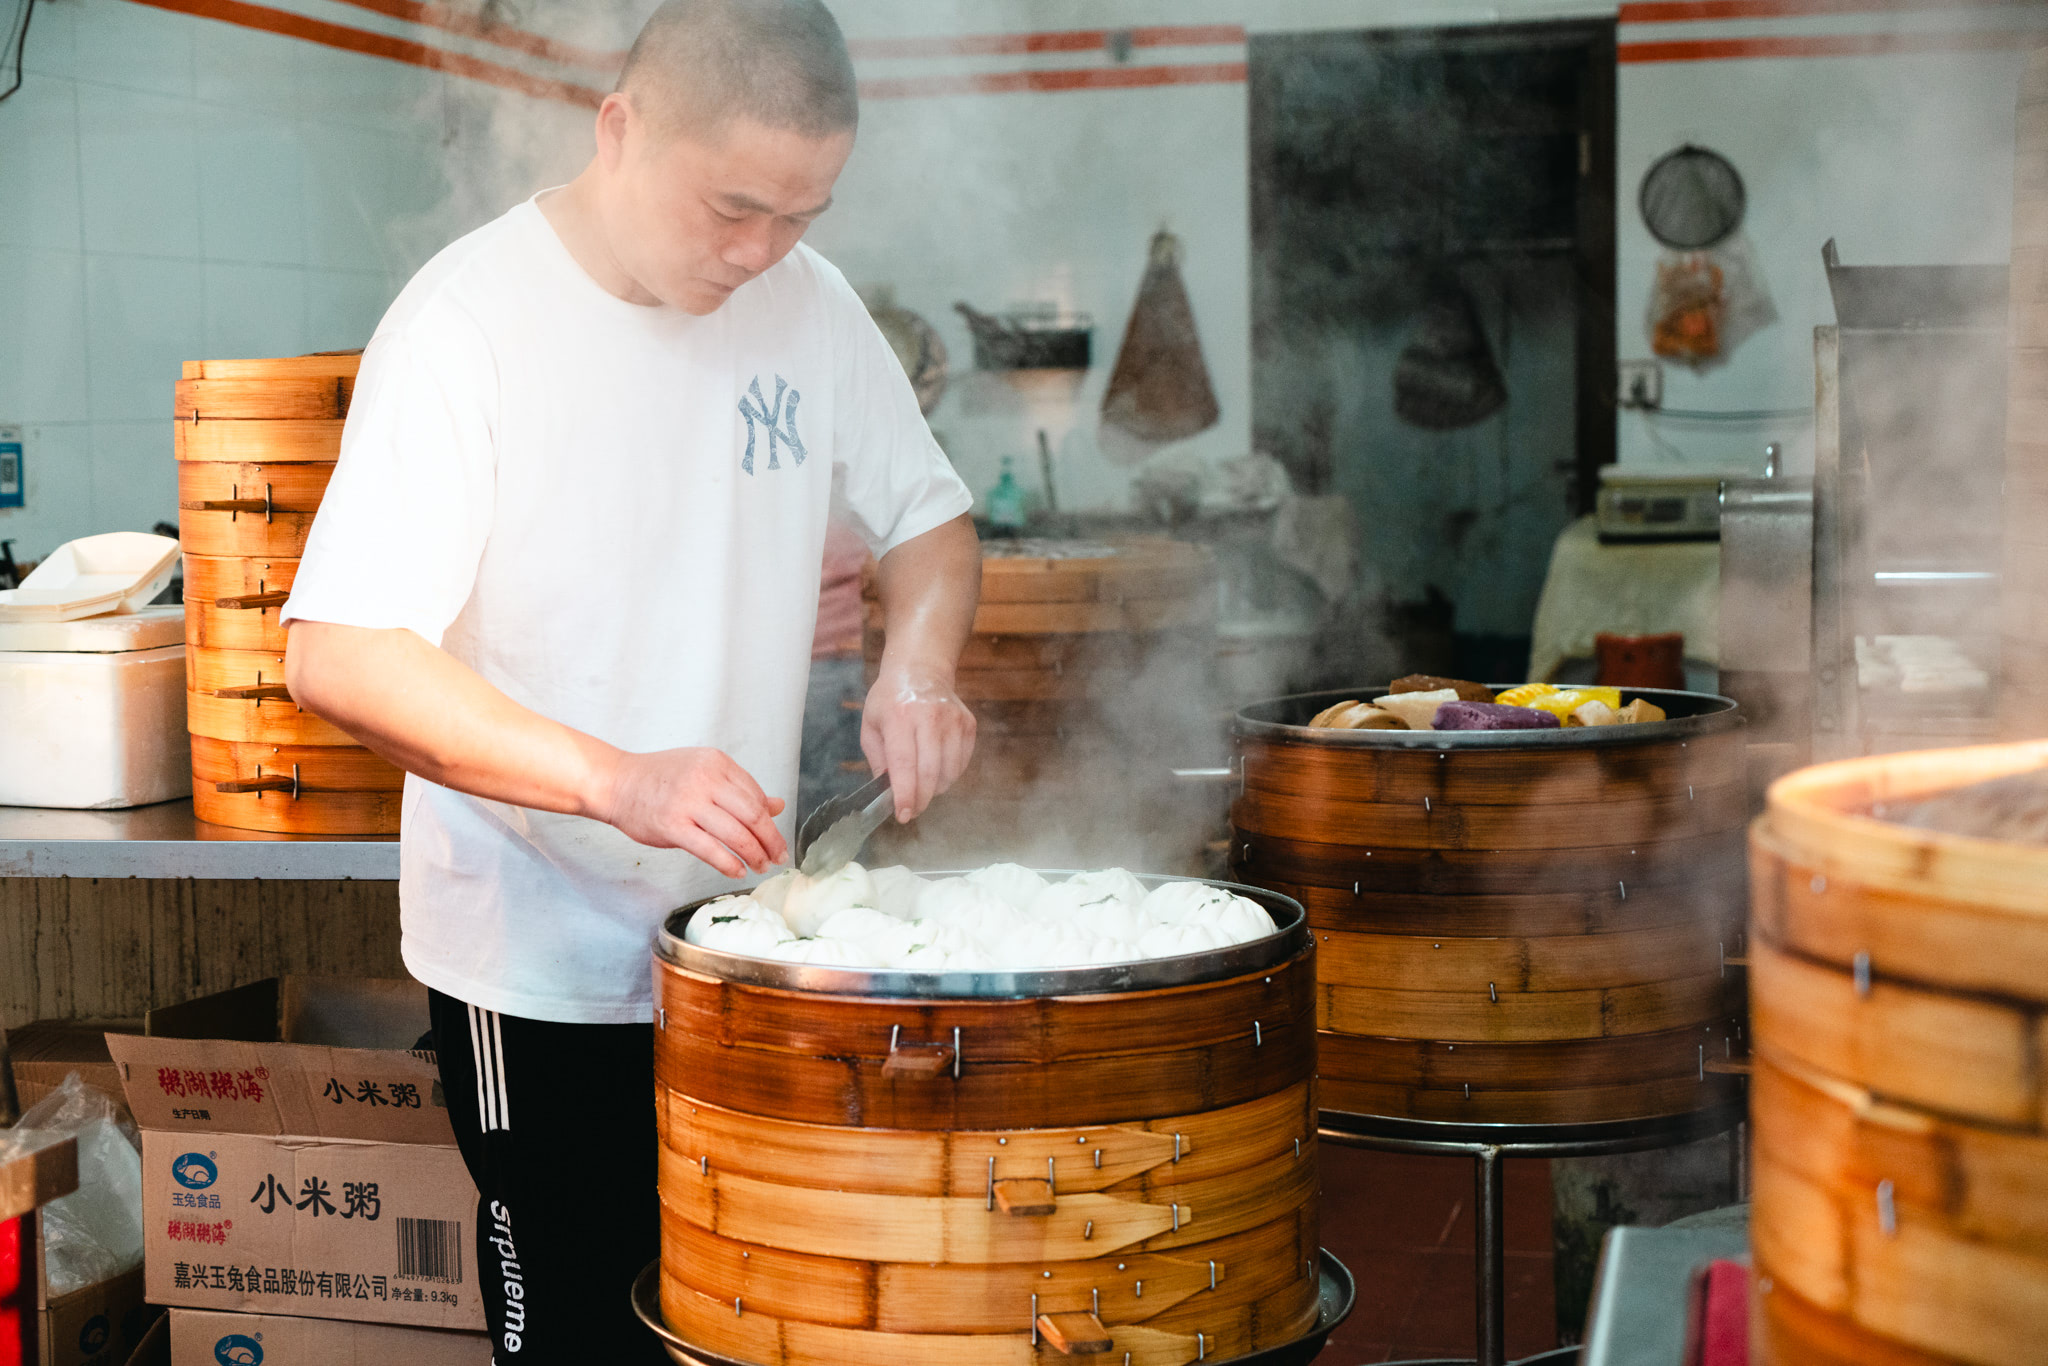 Street food vendor steaming dumplings